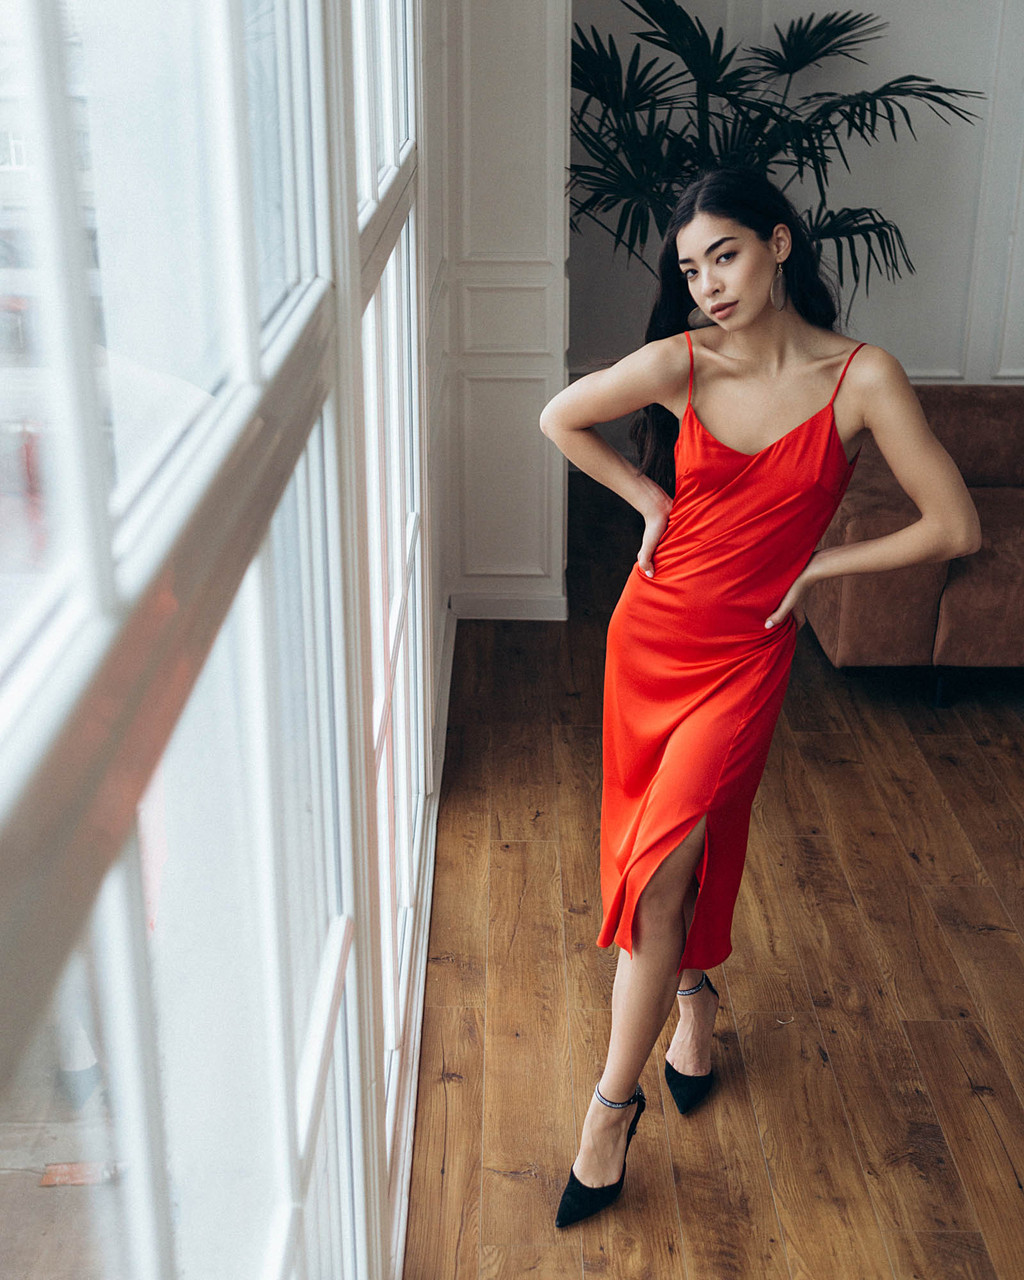 Шелковое платье женское длинное красное в бельевом стиле от бренда Тур, размеры: S, M, L TURWEAR - Фото 5